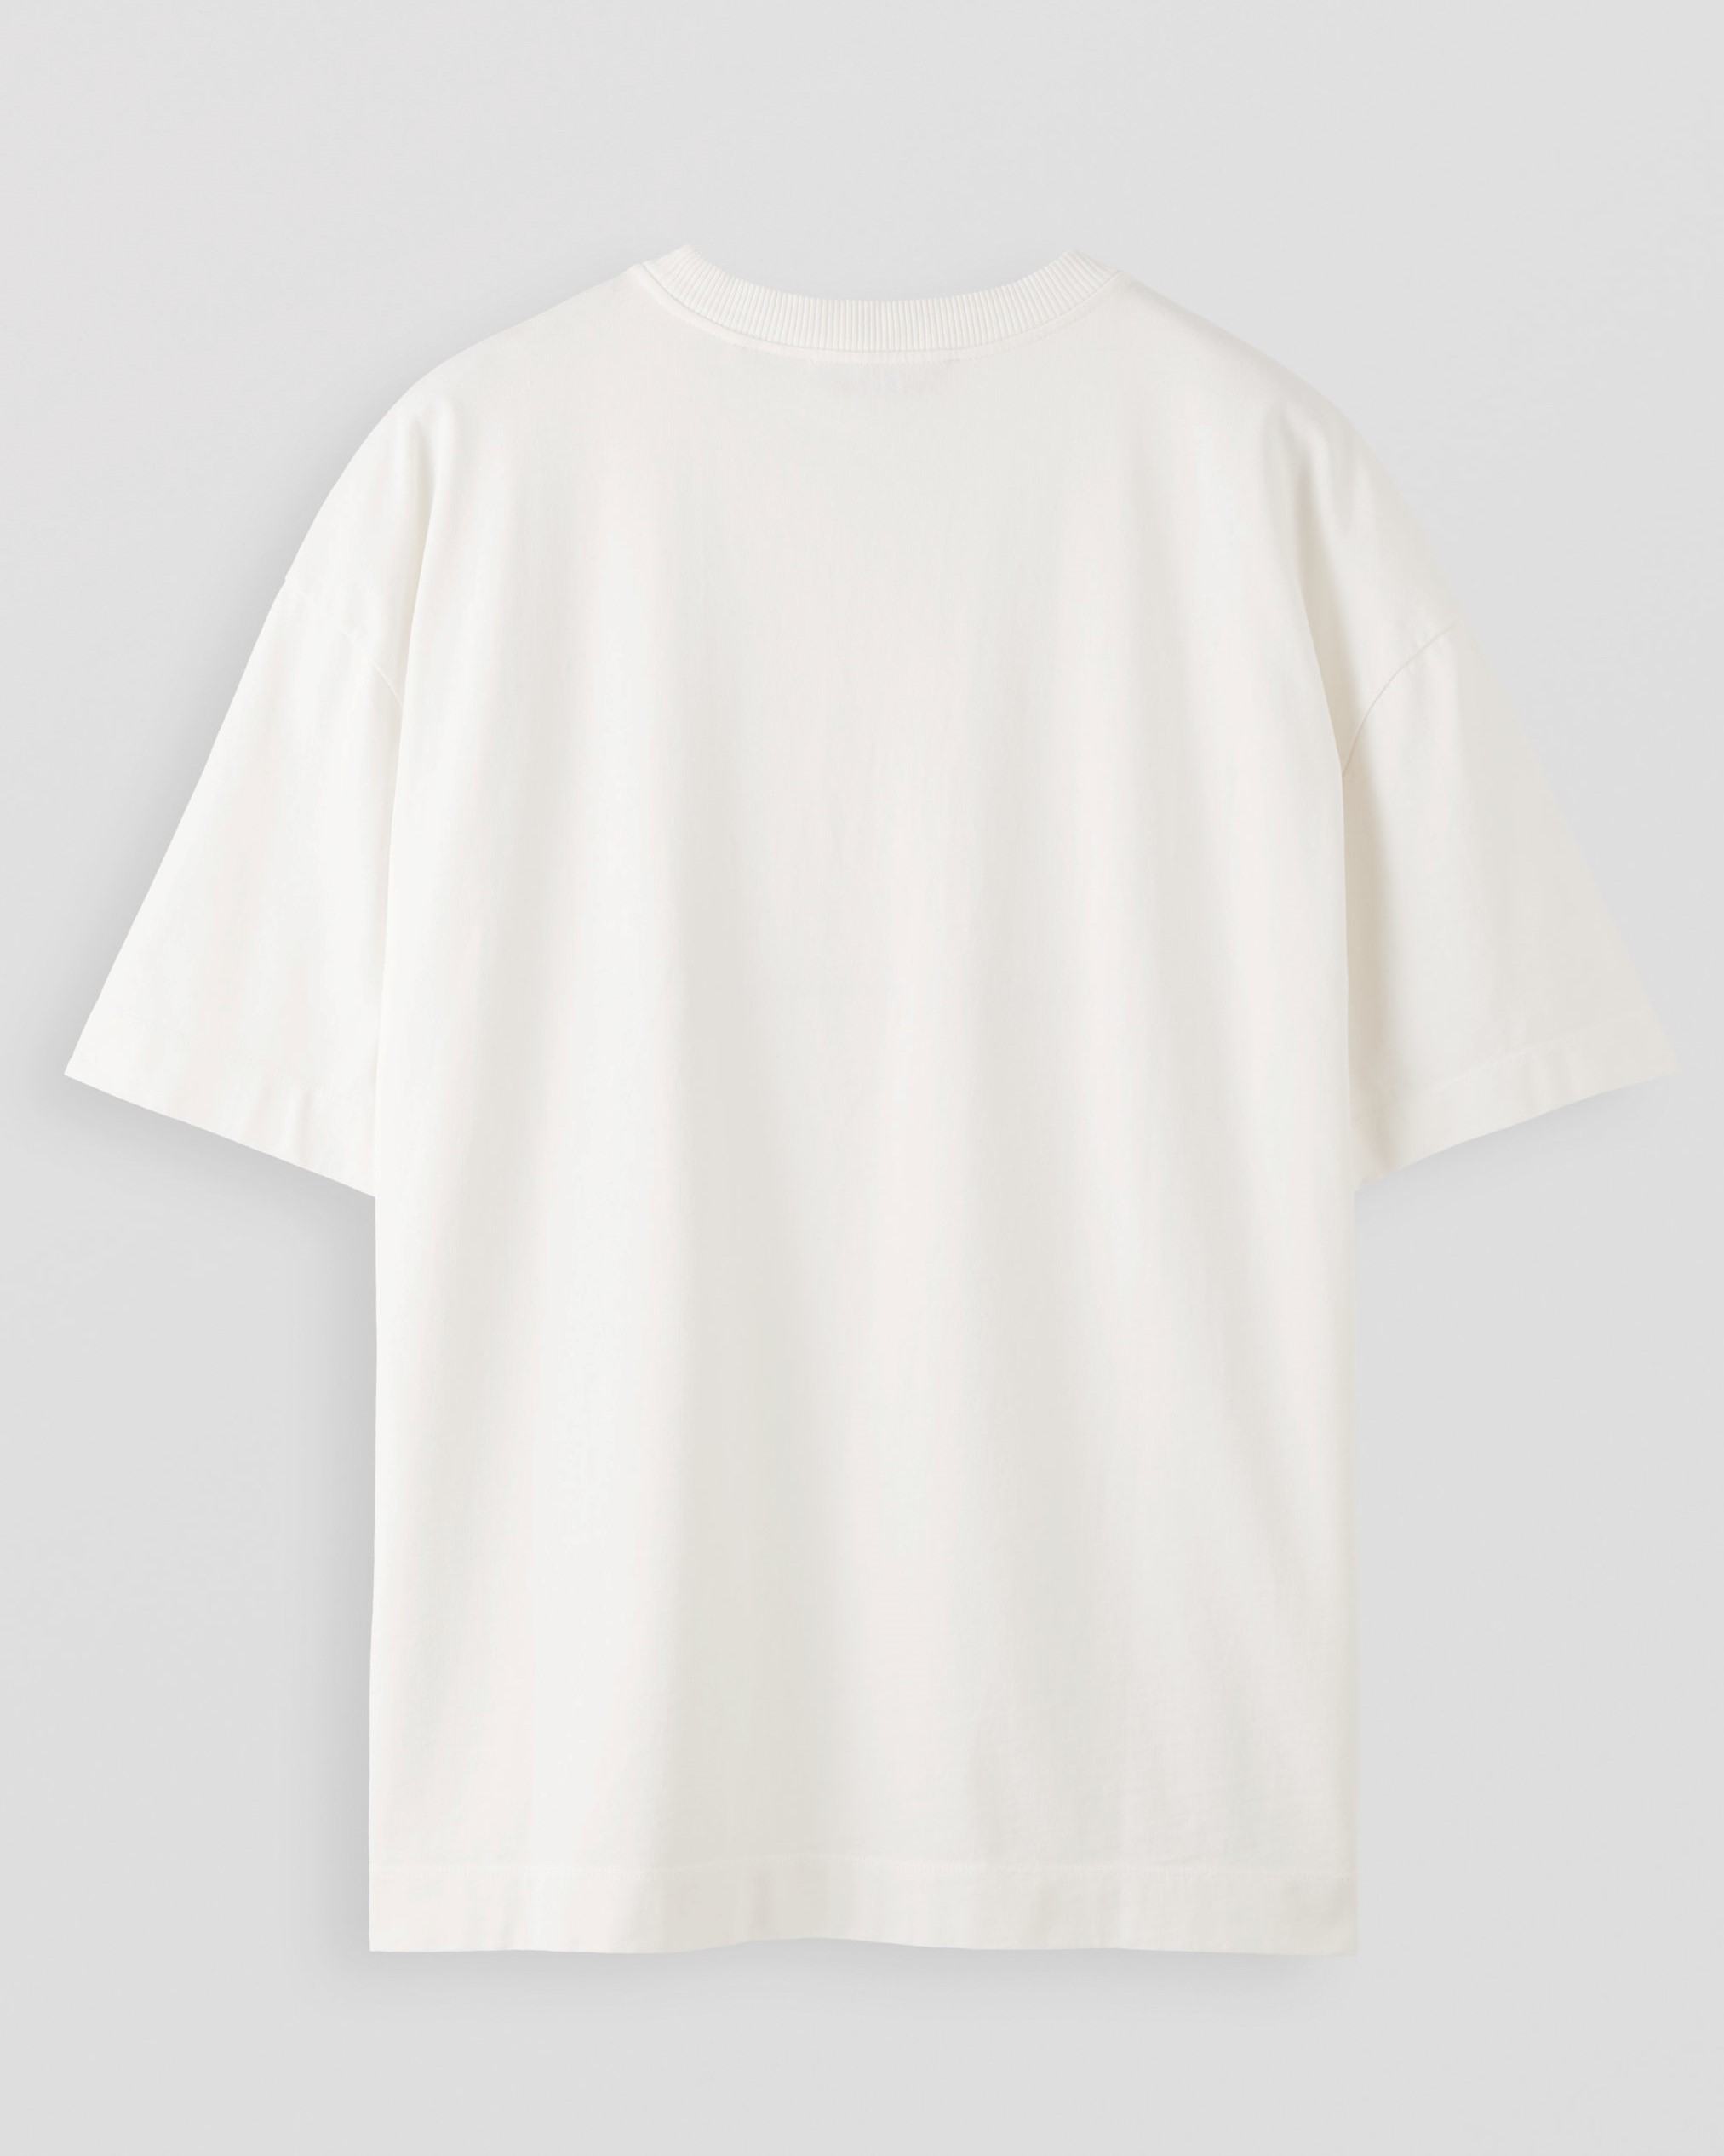 APPLIED ART FORMS Oversize T-Shirt in Light Ecru